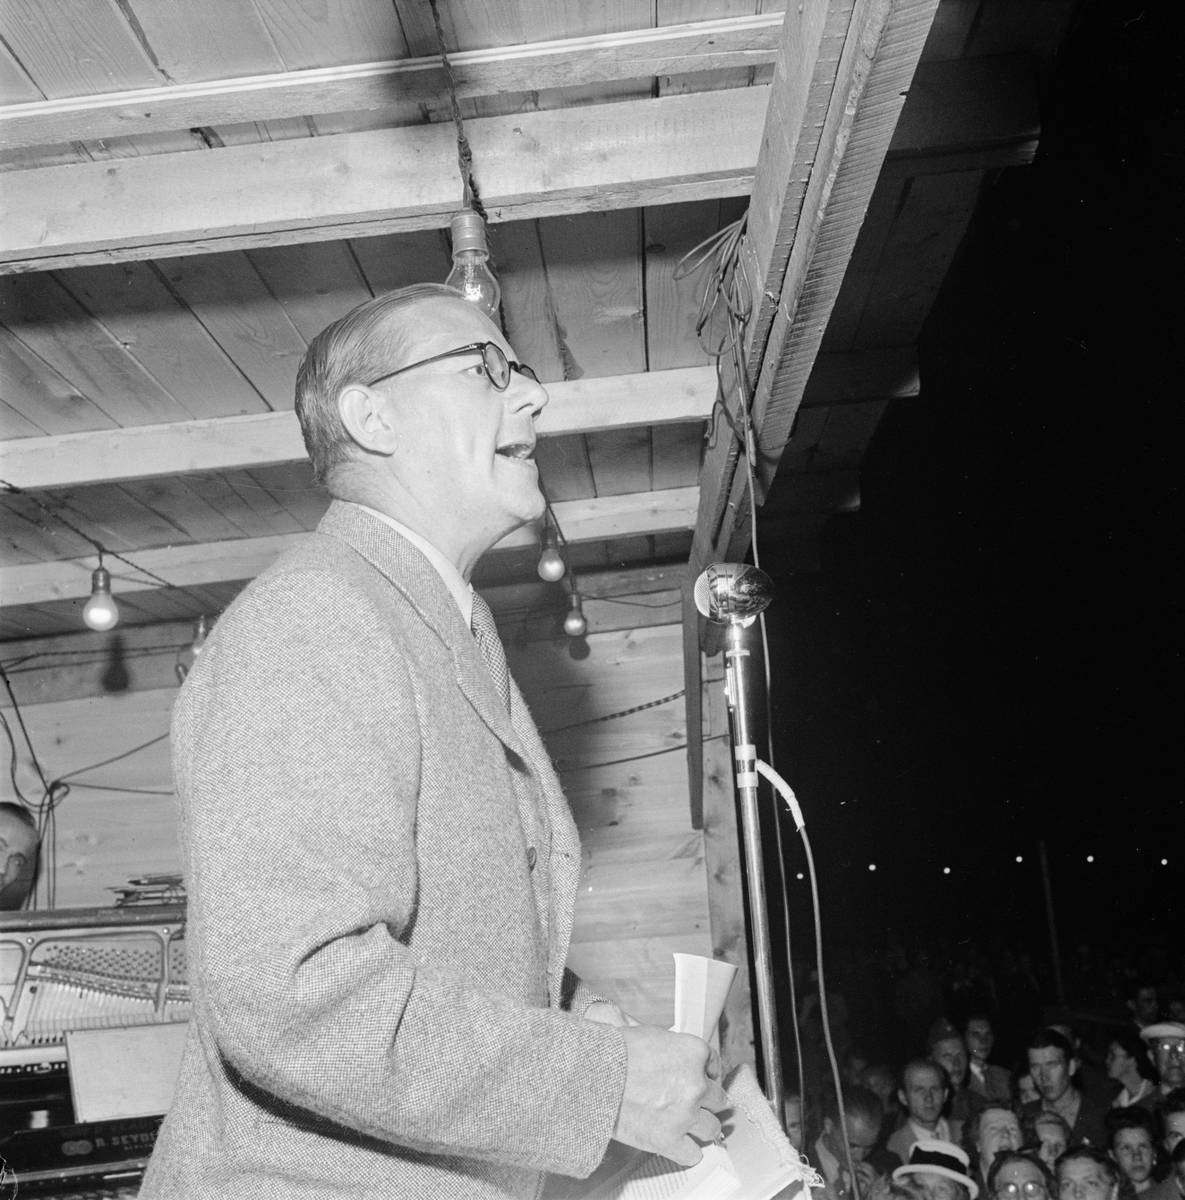 Sommar - man talar inför publik, Uppsala 1947